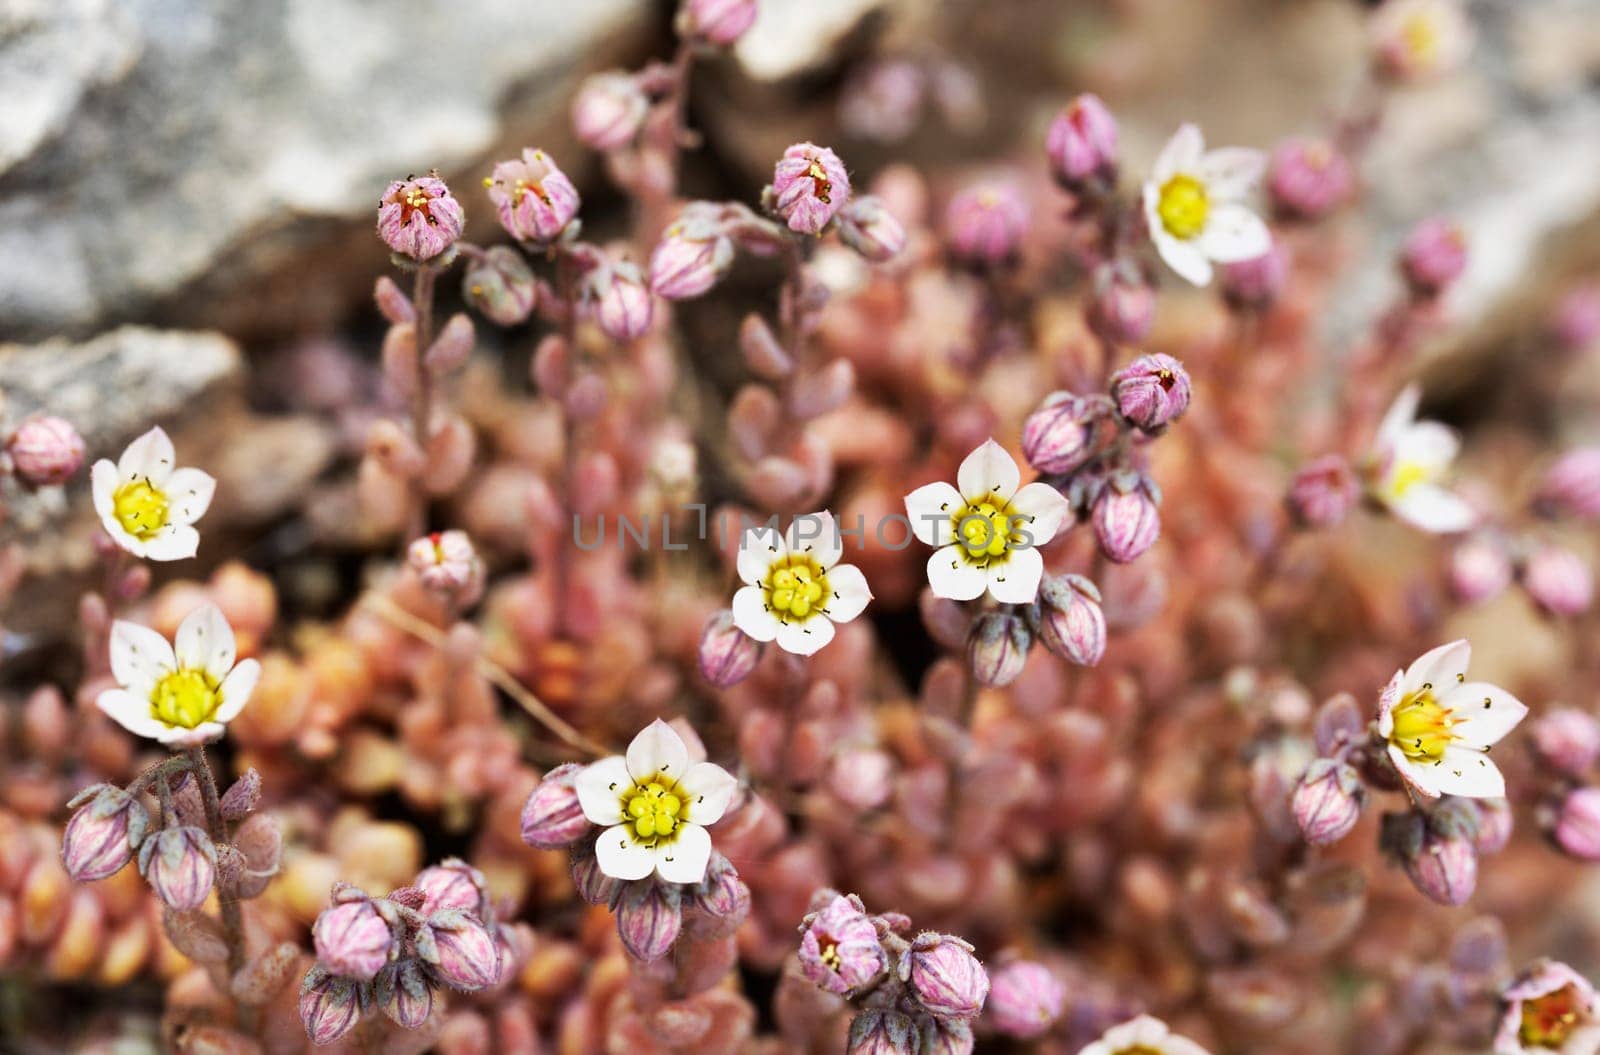 Flowers of sedum stonecrop by victimewalker